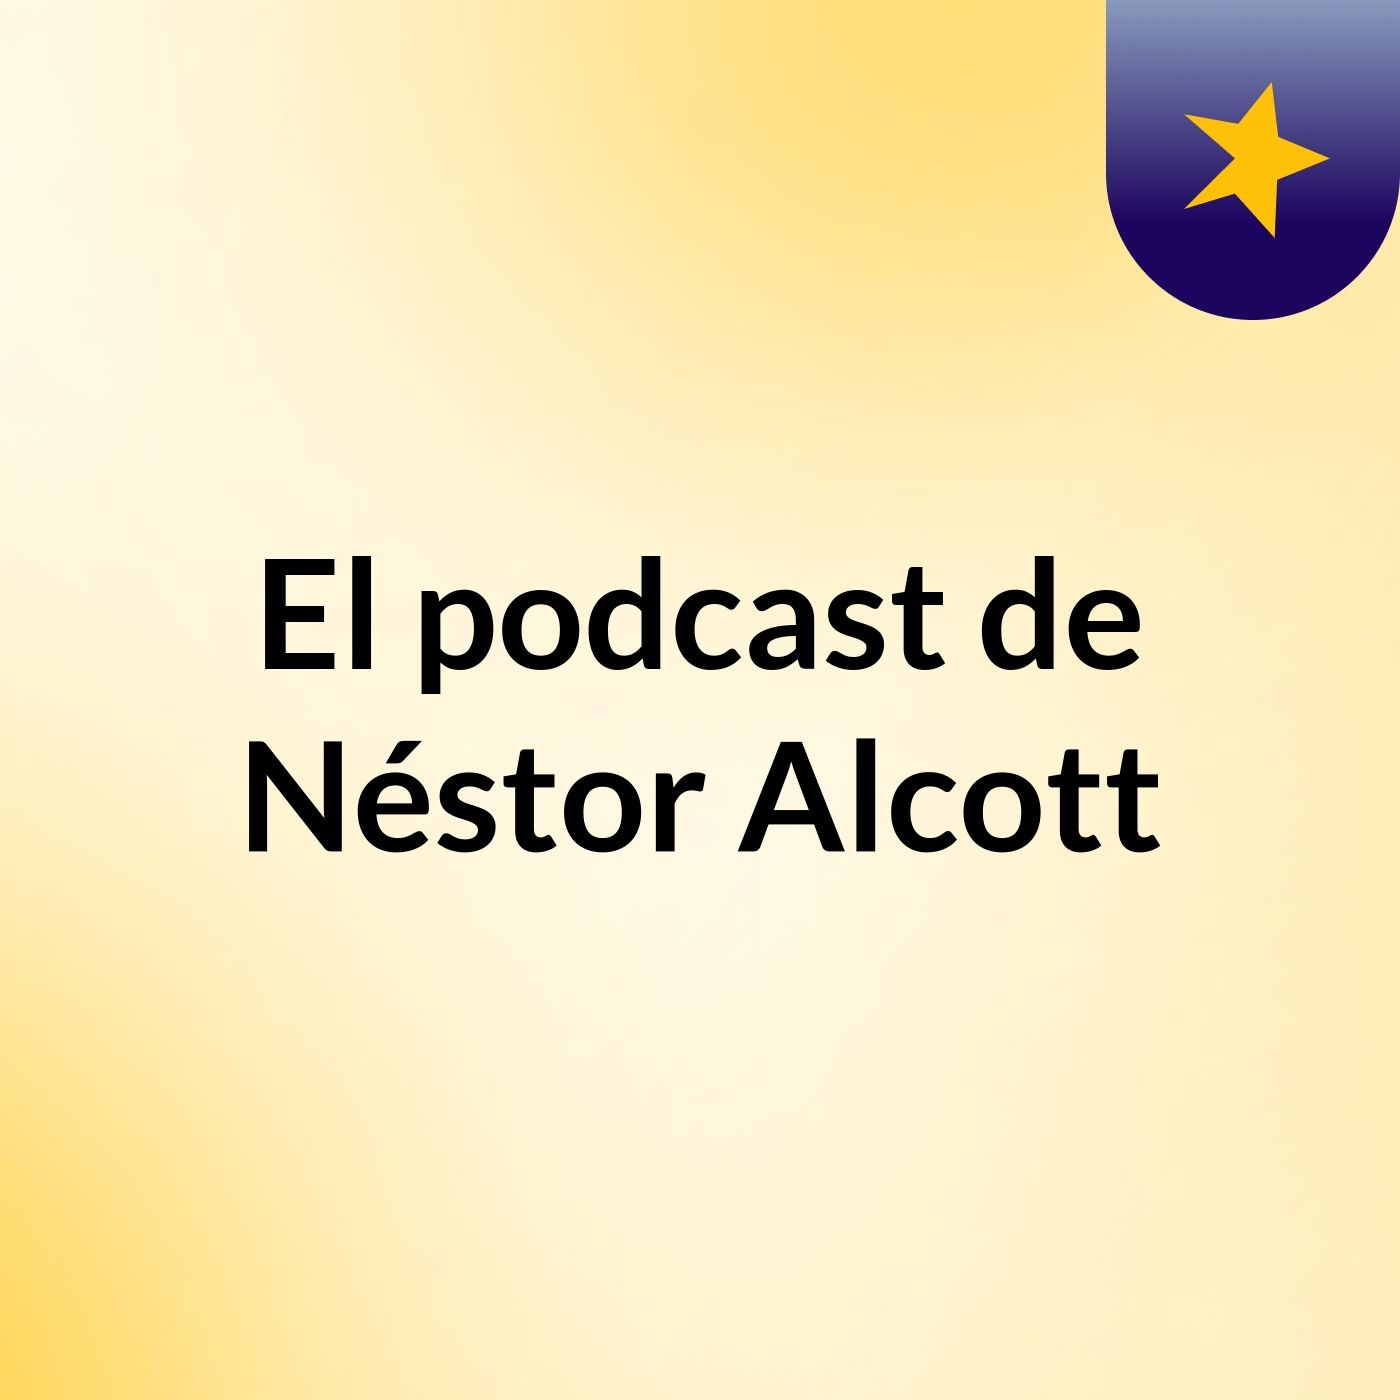 El podcast de Néstor Alcott